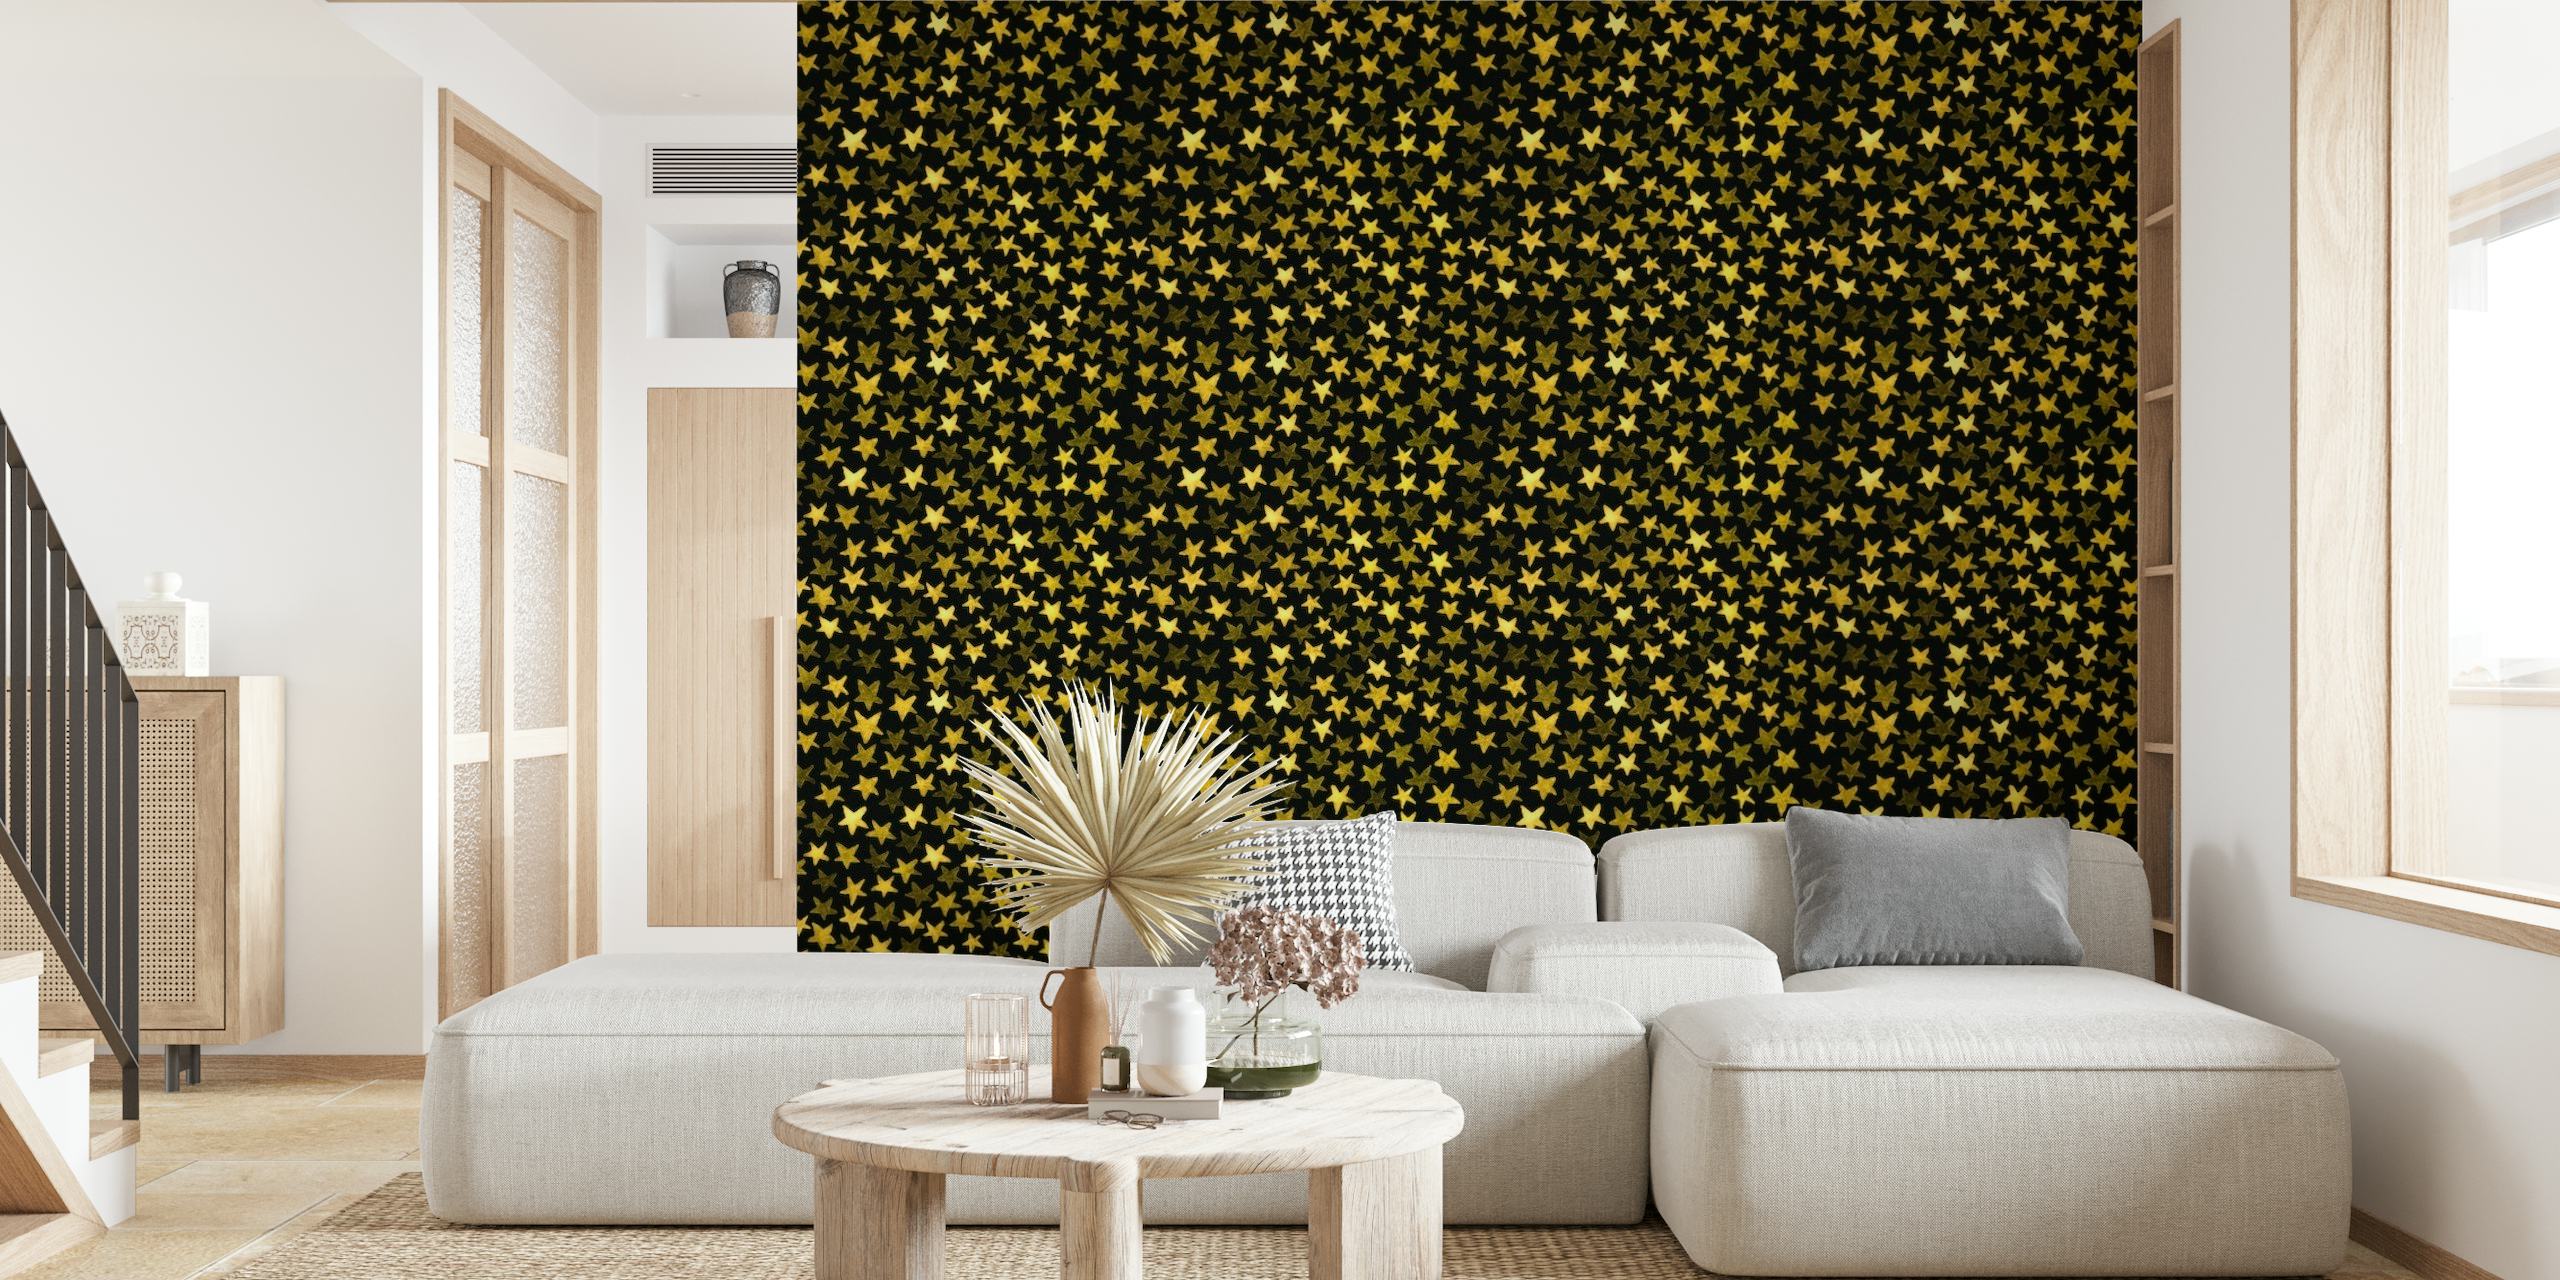 Mural de pared de acuarela abstracta que representa un mar de estrellas en tonos dorados sobre un fondo oscuro